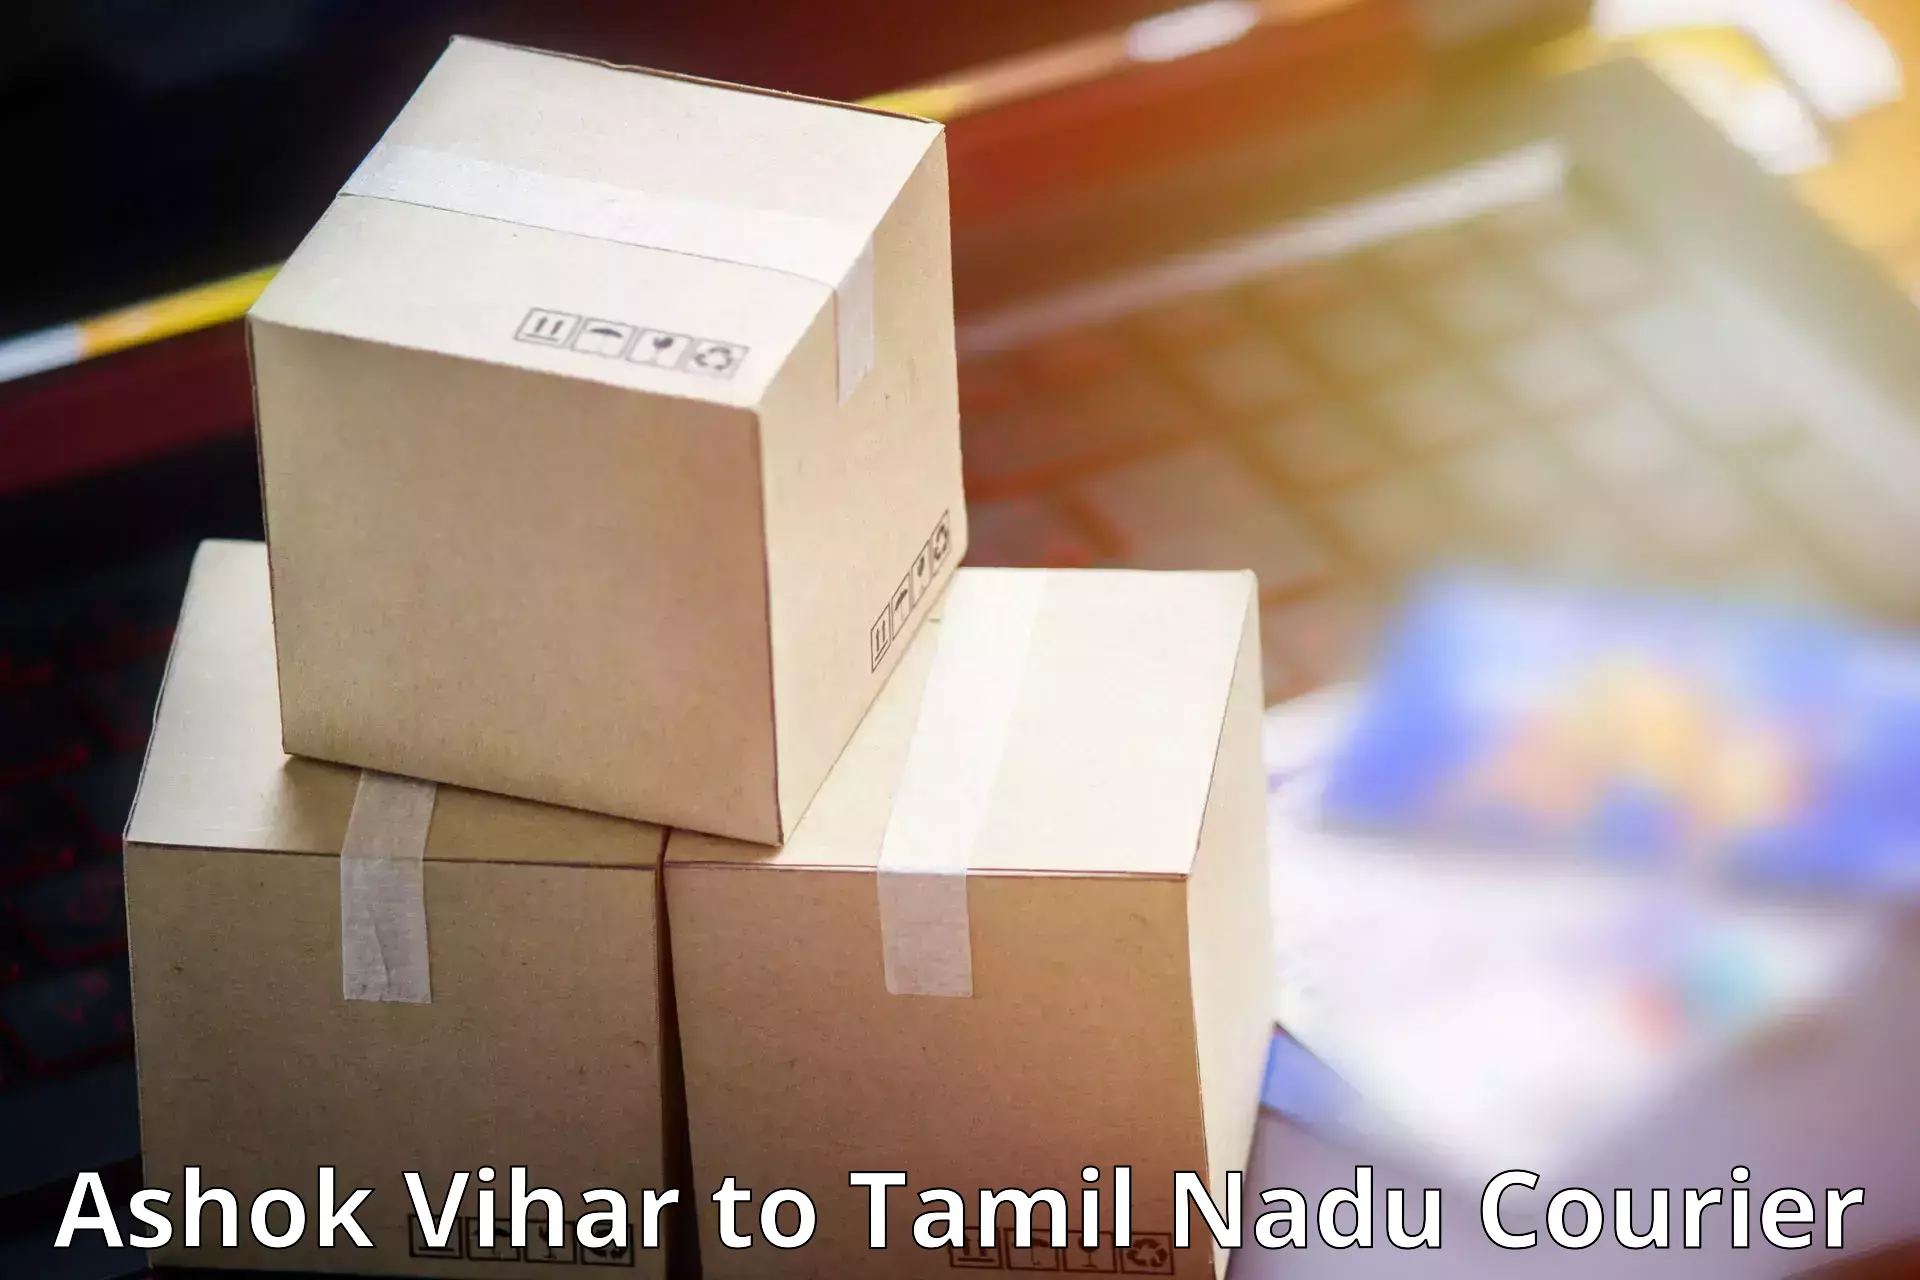 Next-generation courier services Ashok Vihar to Thoothukudi